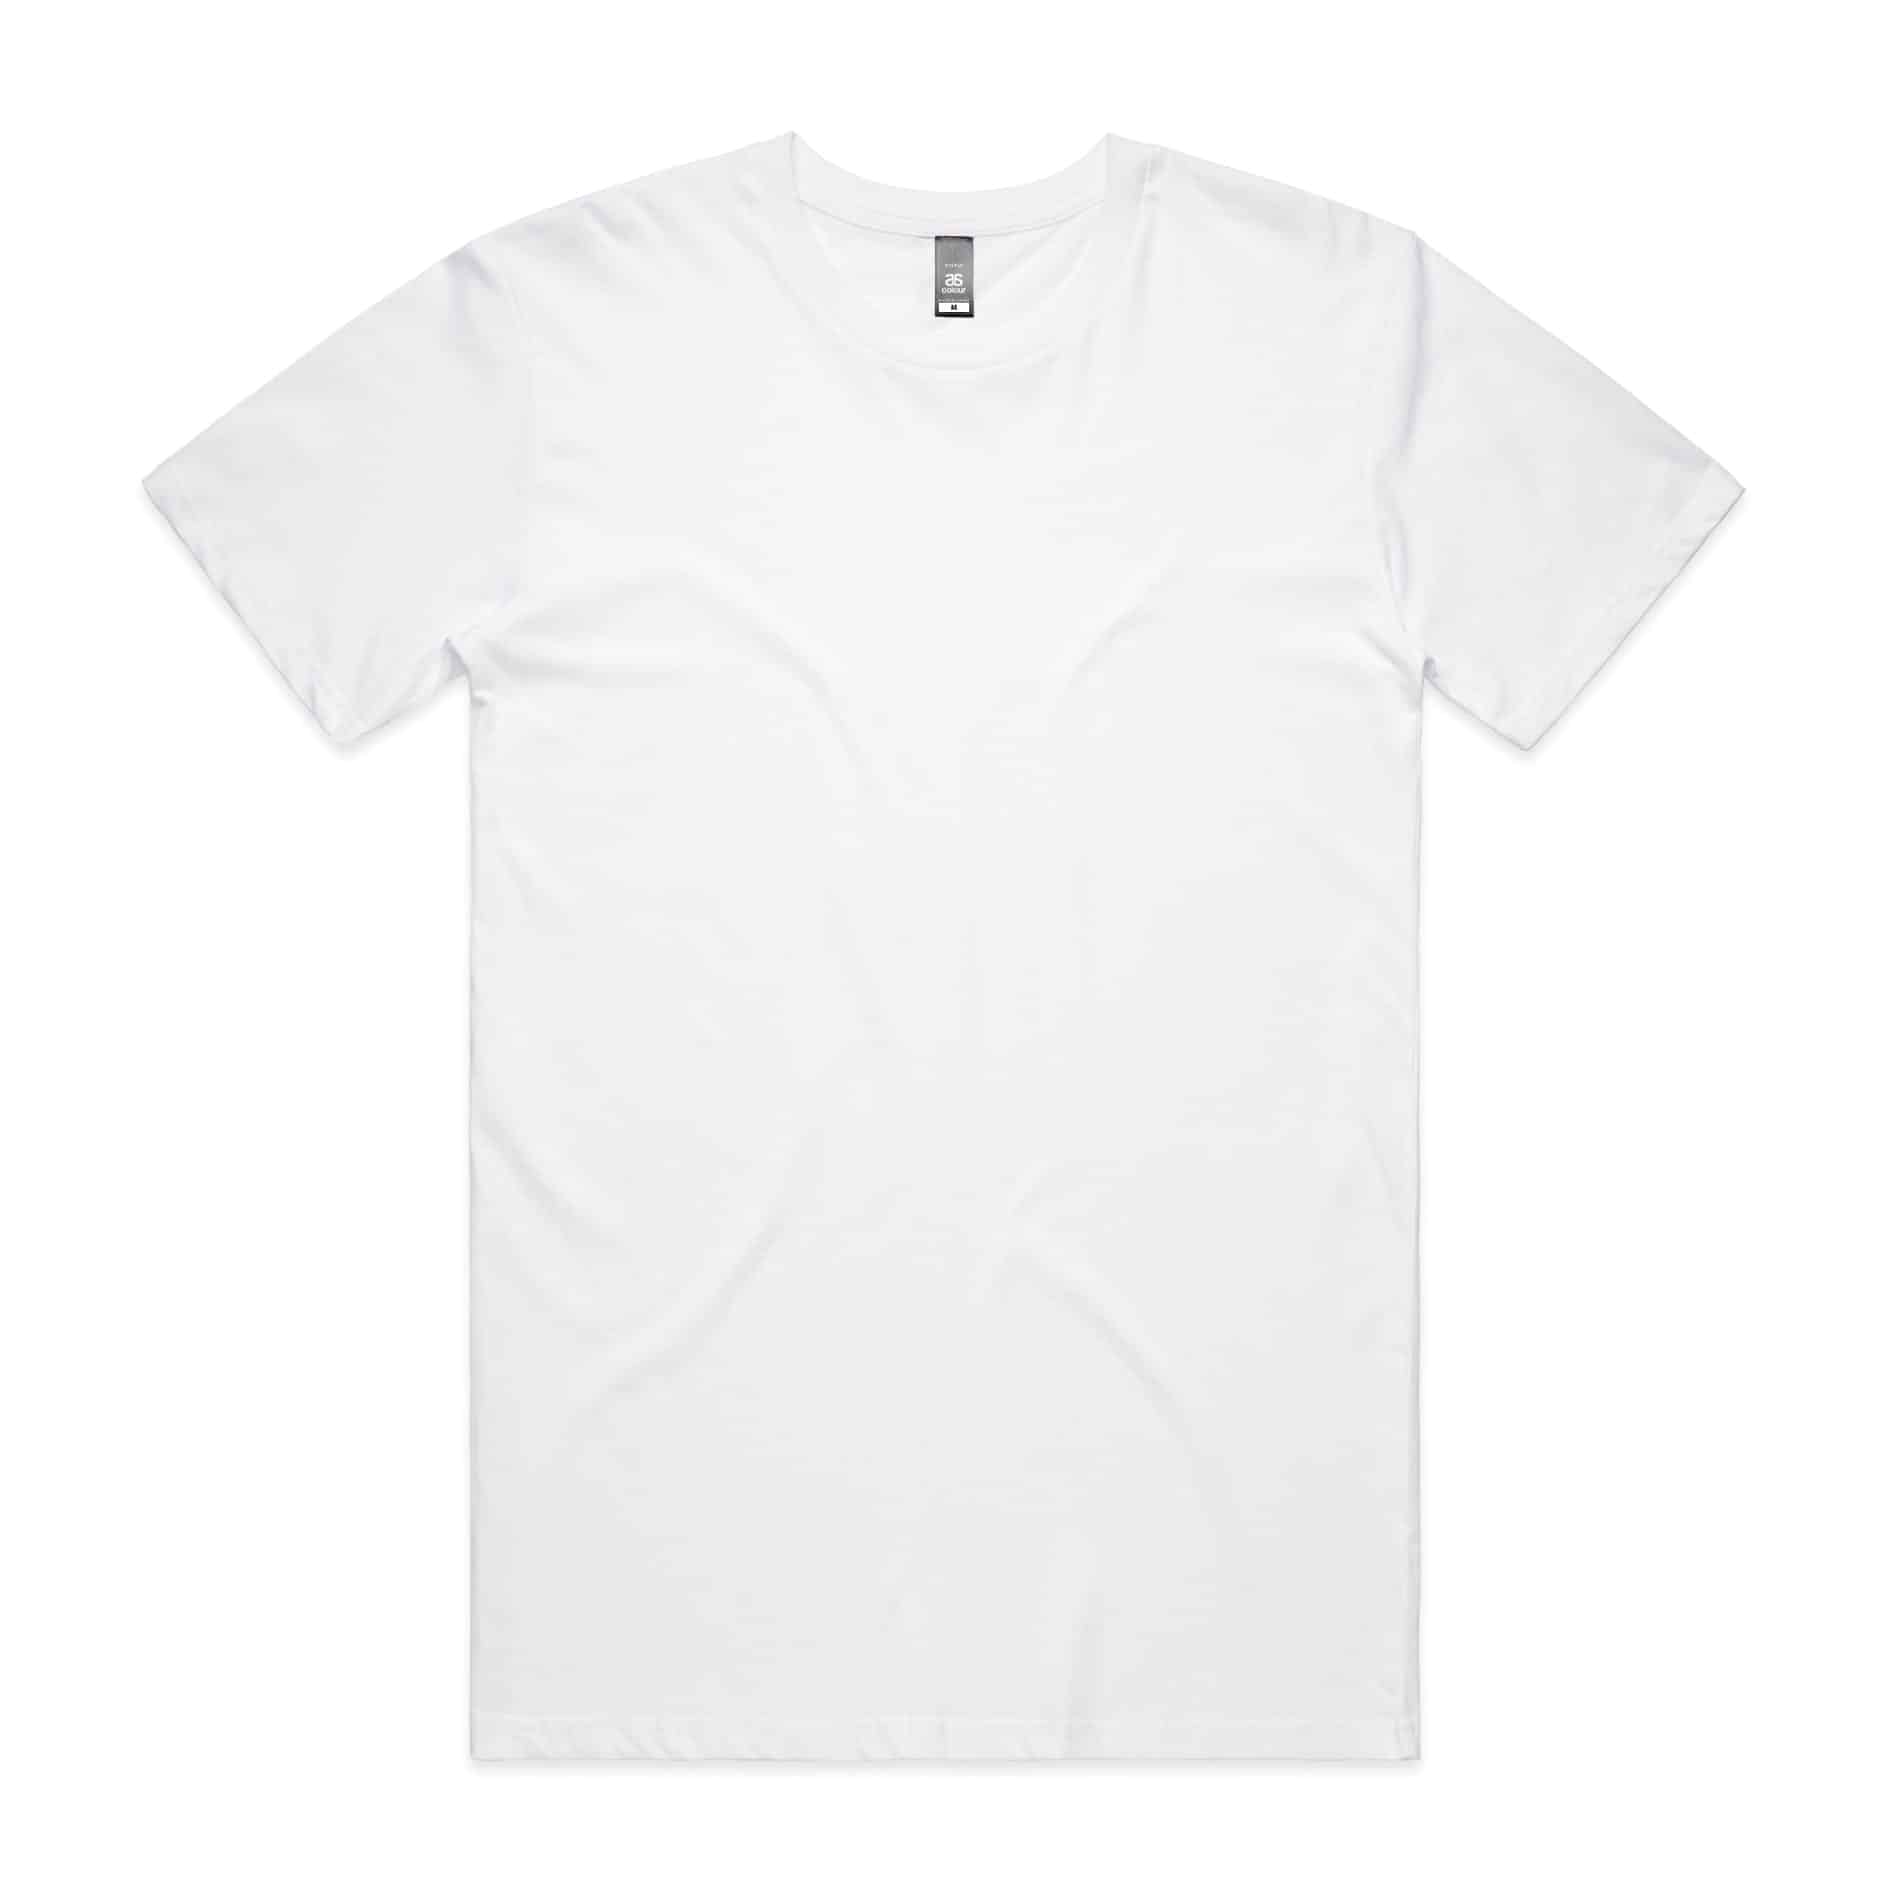 Greece T-Shirt